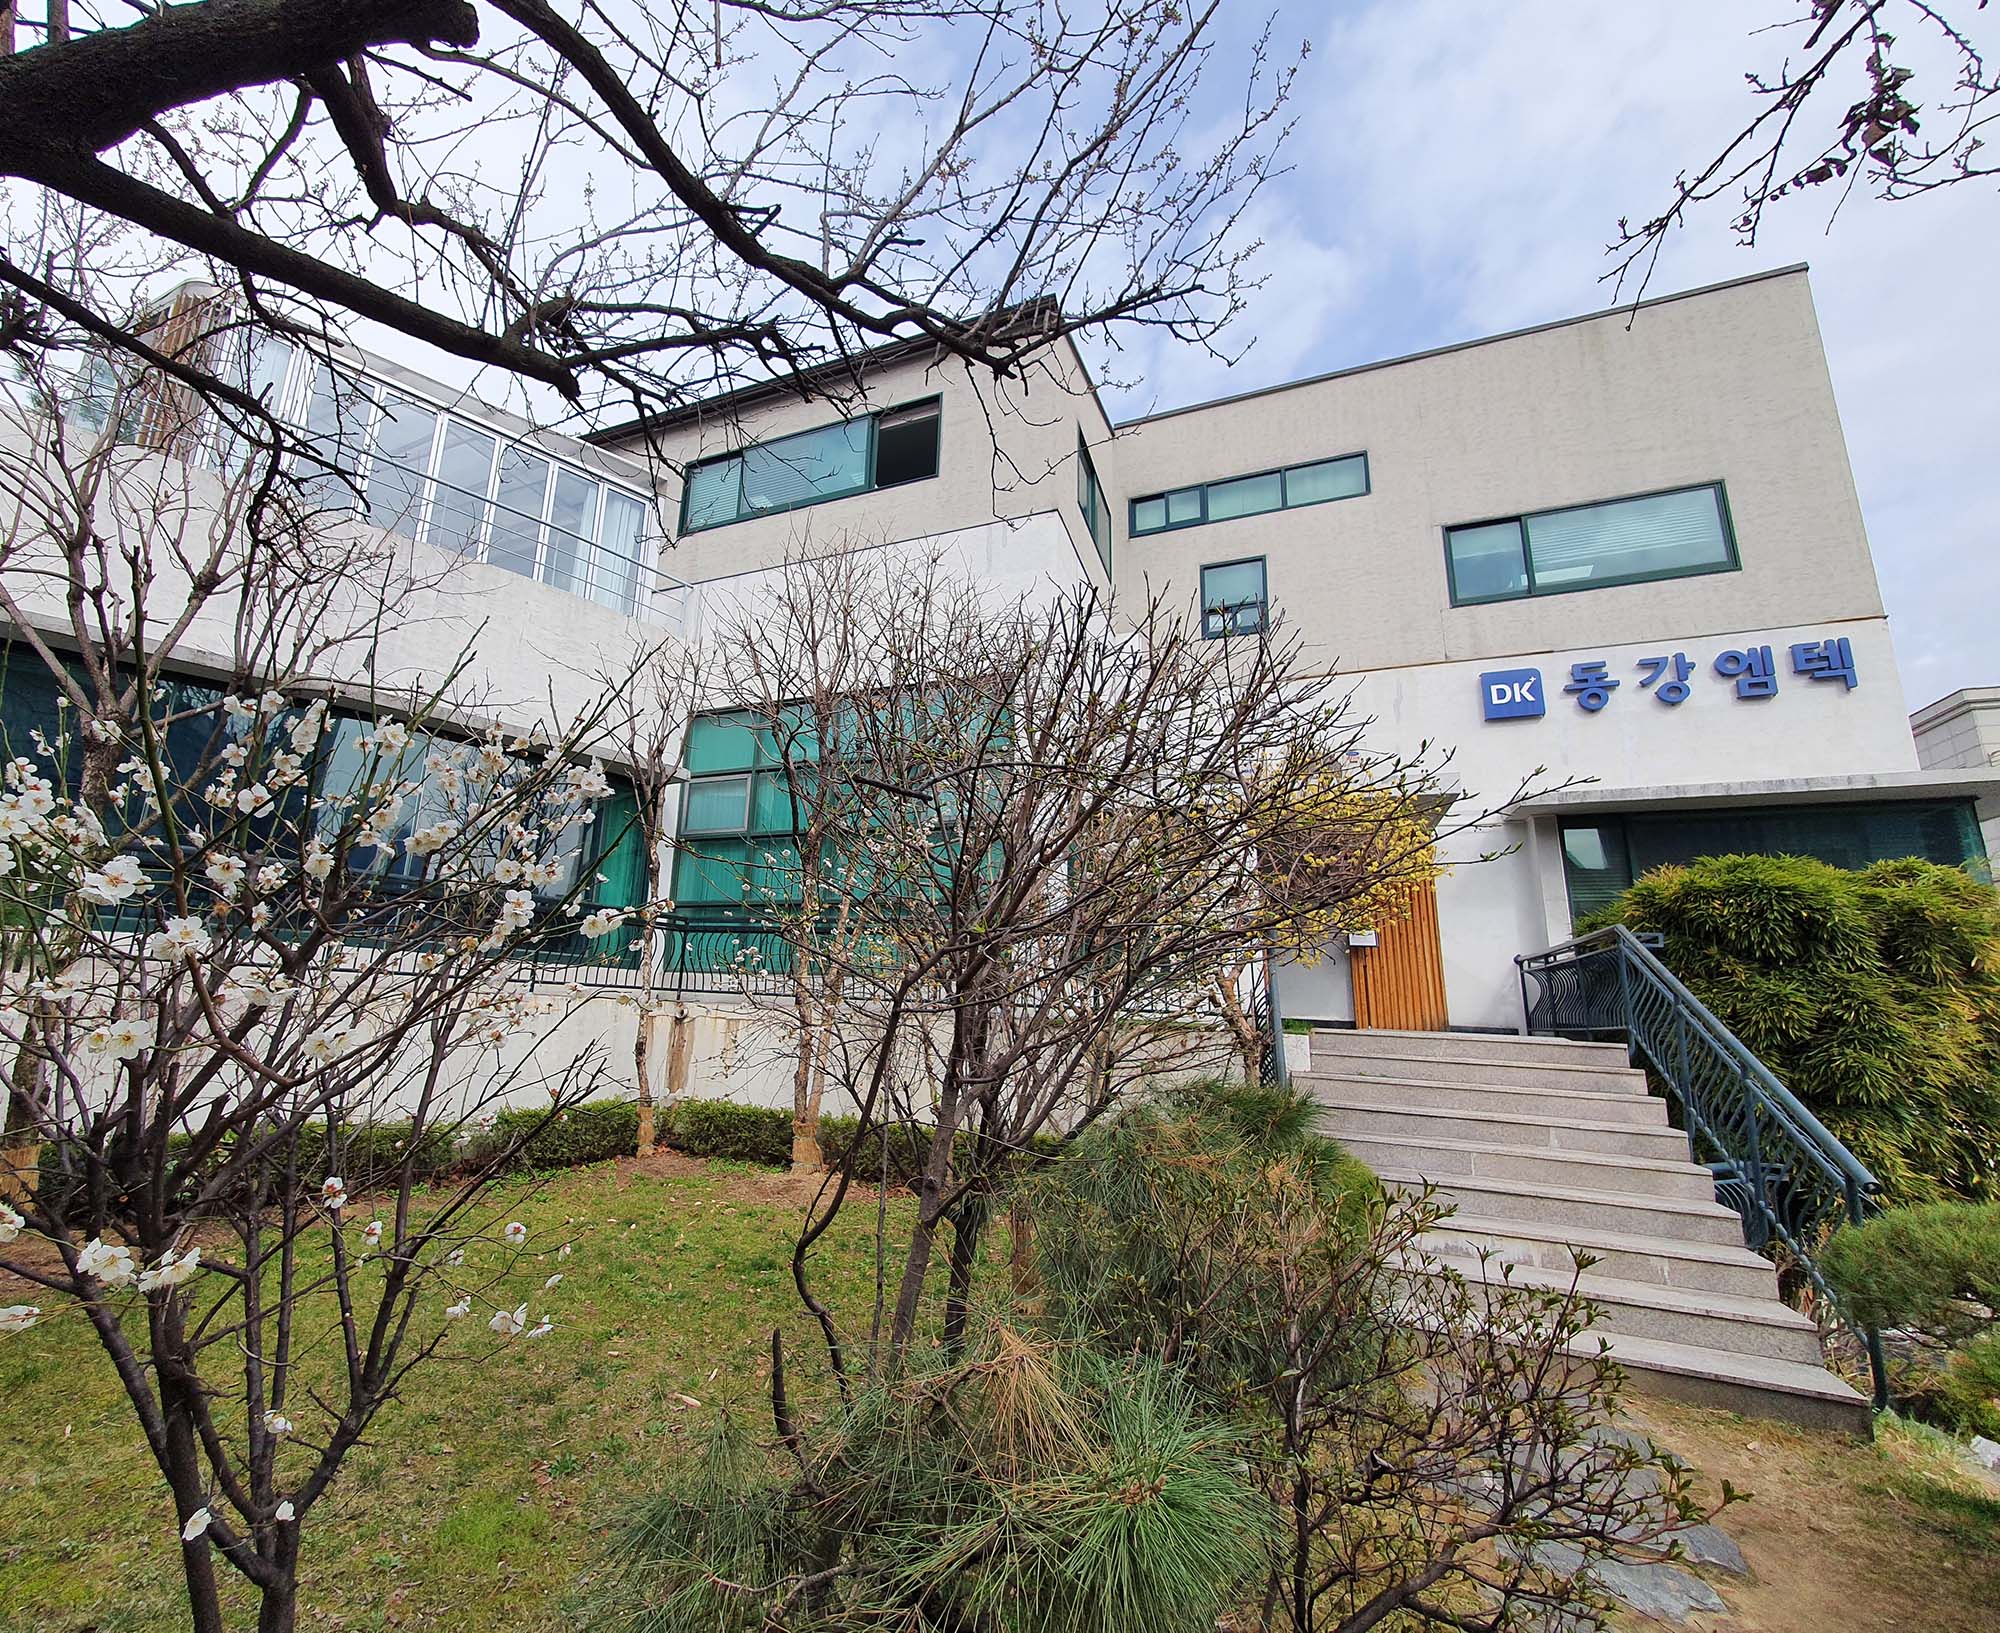 A photo of the DK M-Tech Head Office in Seol, South Korea